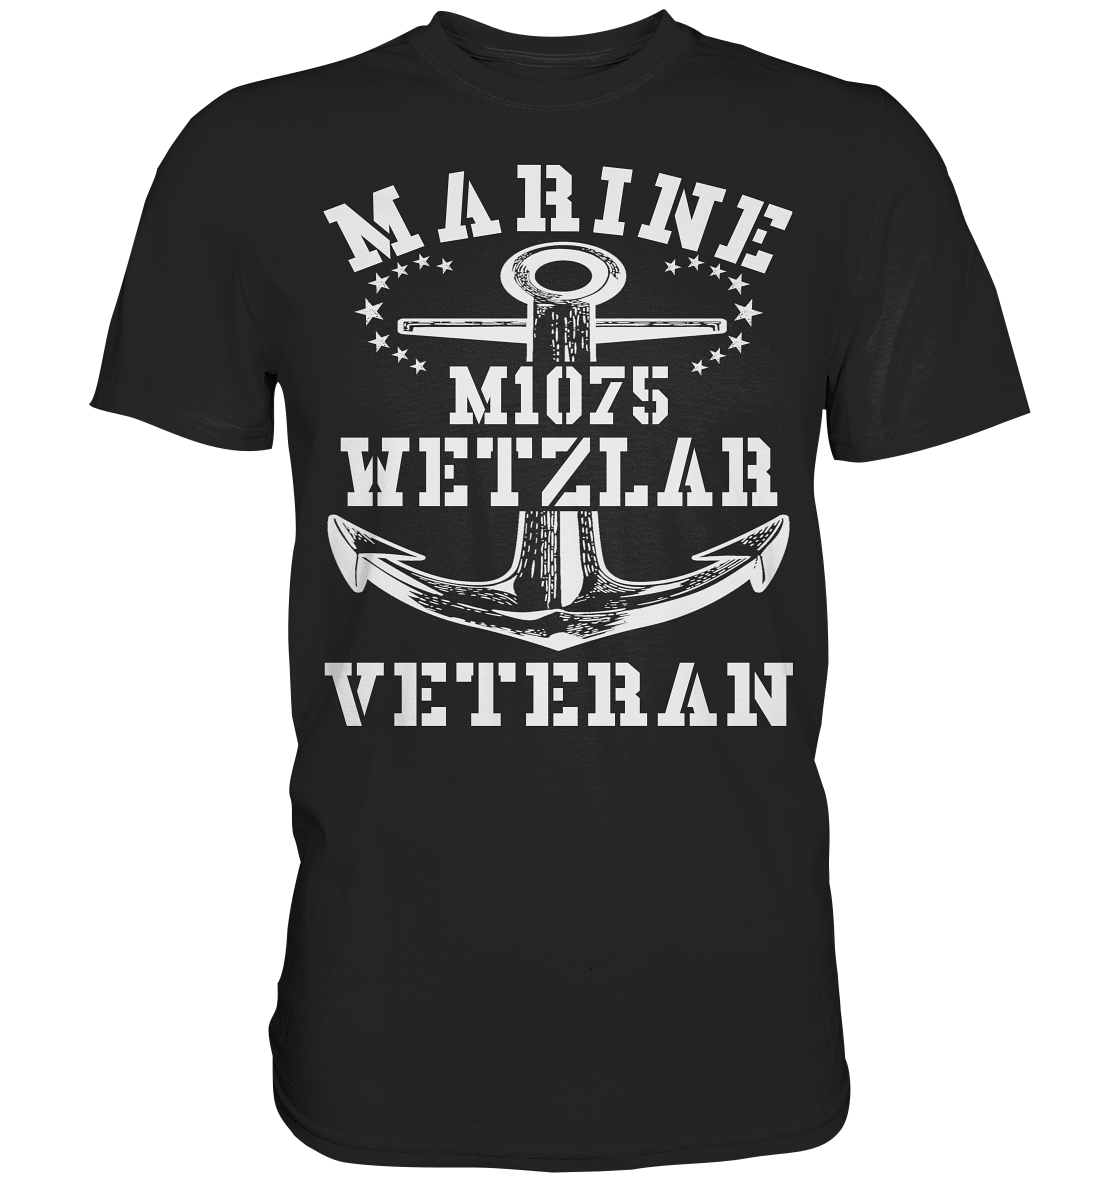 MARINE VETERAN M1075 WETZLAR - Premium Shirt